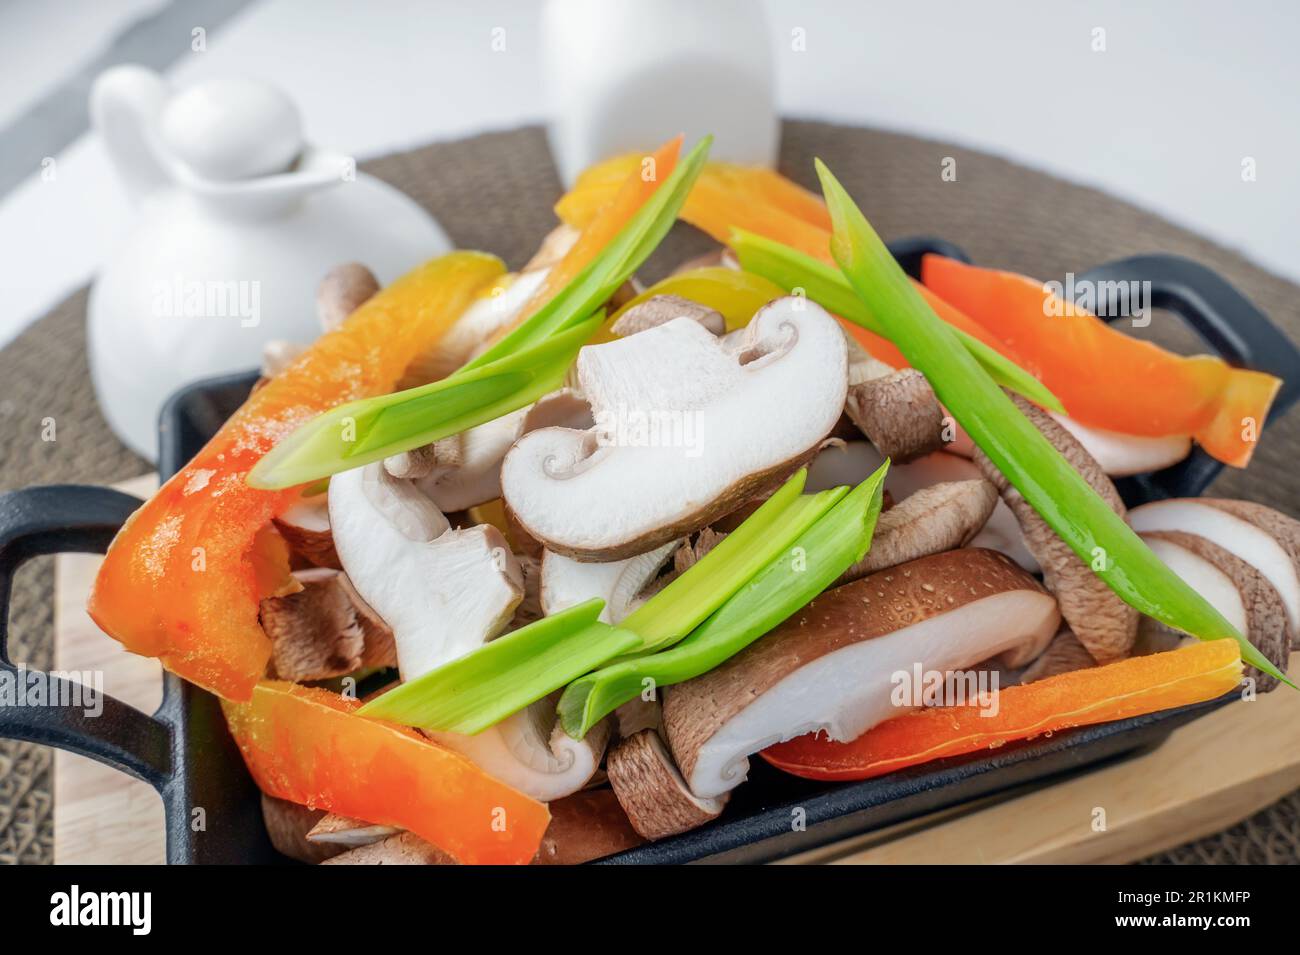 Funghi shiitake con verdure surgelate, peperoni, cipolle e pomodori sono pronti per la cottura. Piatto vegetariano di verdure con funghi shiitake. Foto Stock